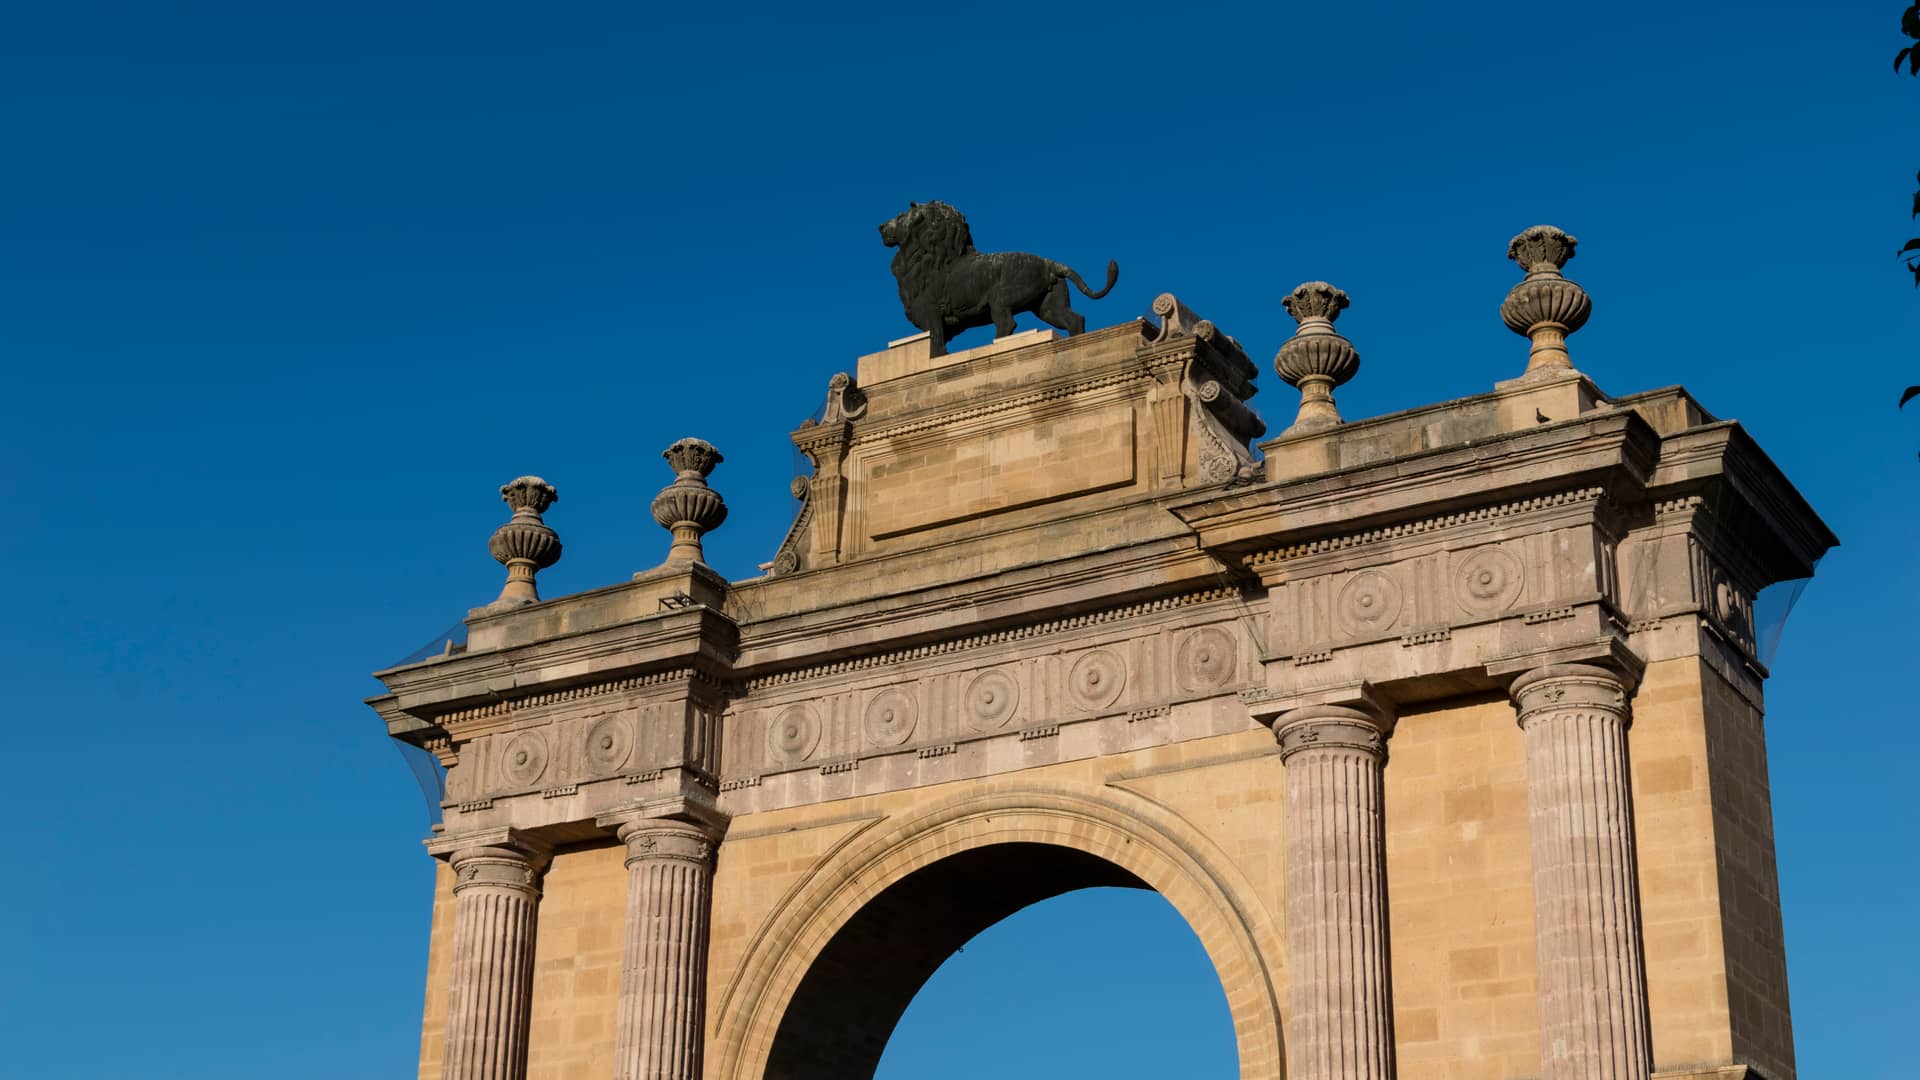 Arco de pasarela de León donde es posible encontrar una sucursal de compañía telefónica att